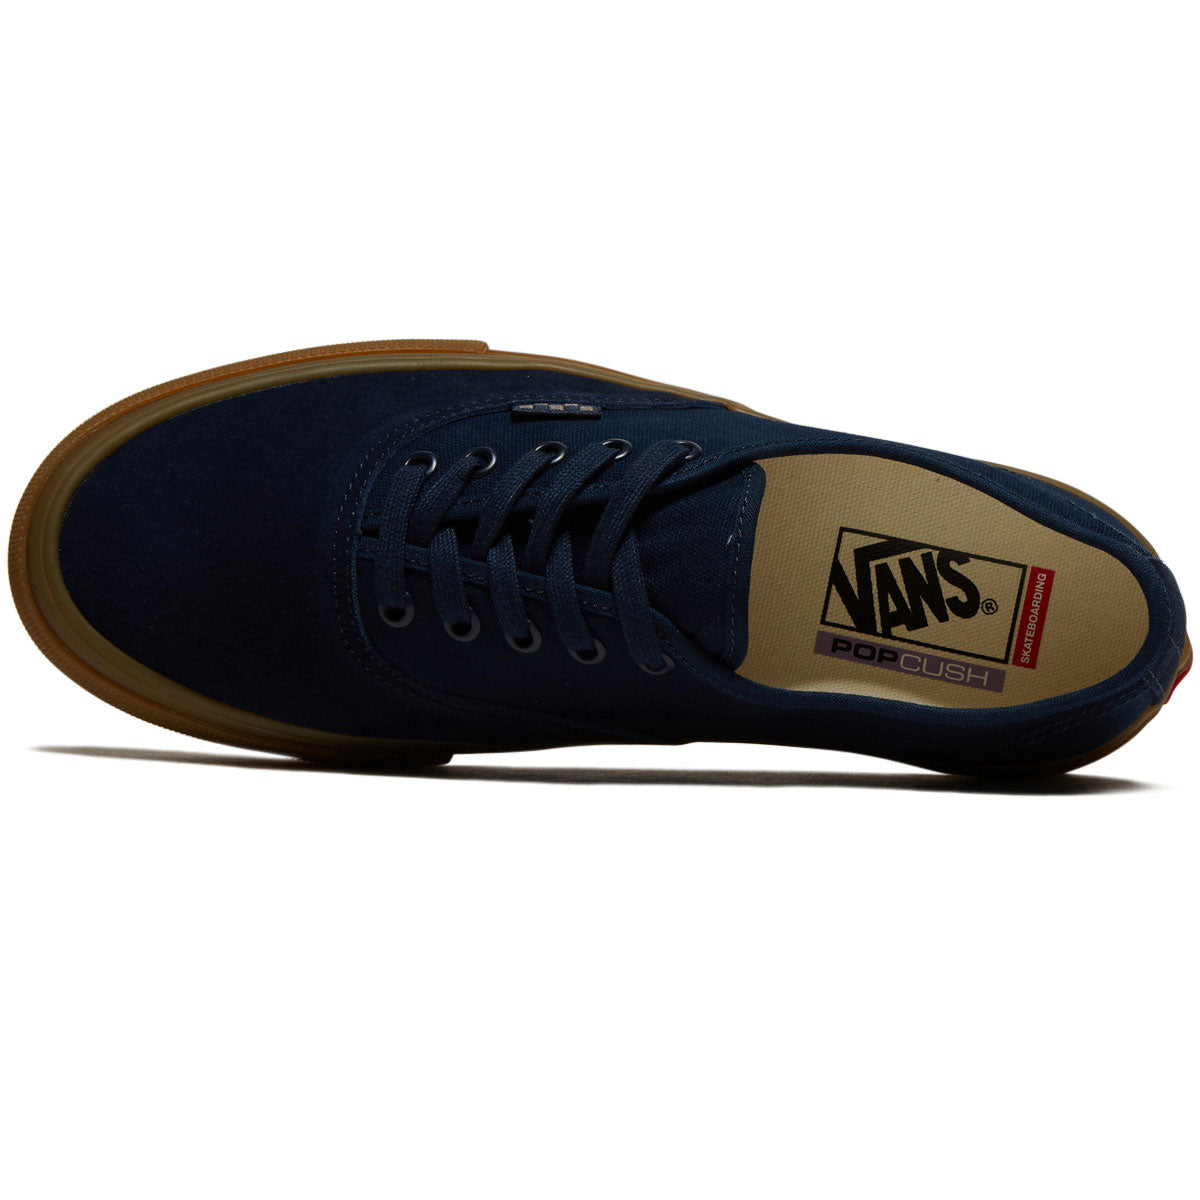 Vans Skate Authentic Shoes - Navy/Gum image 3